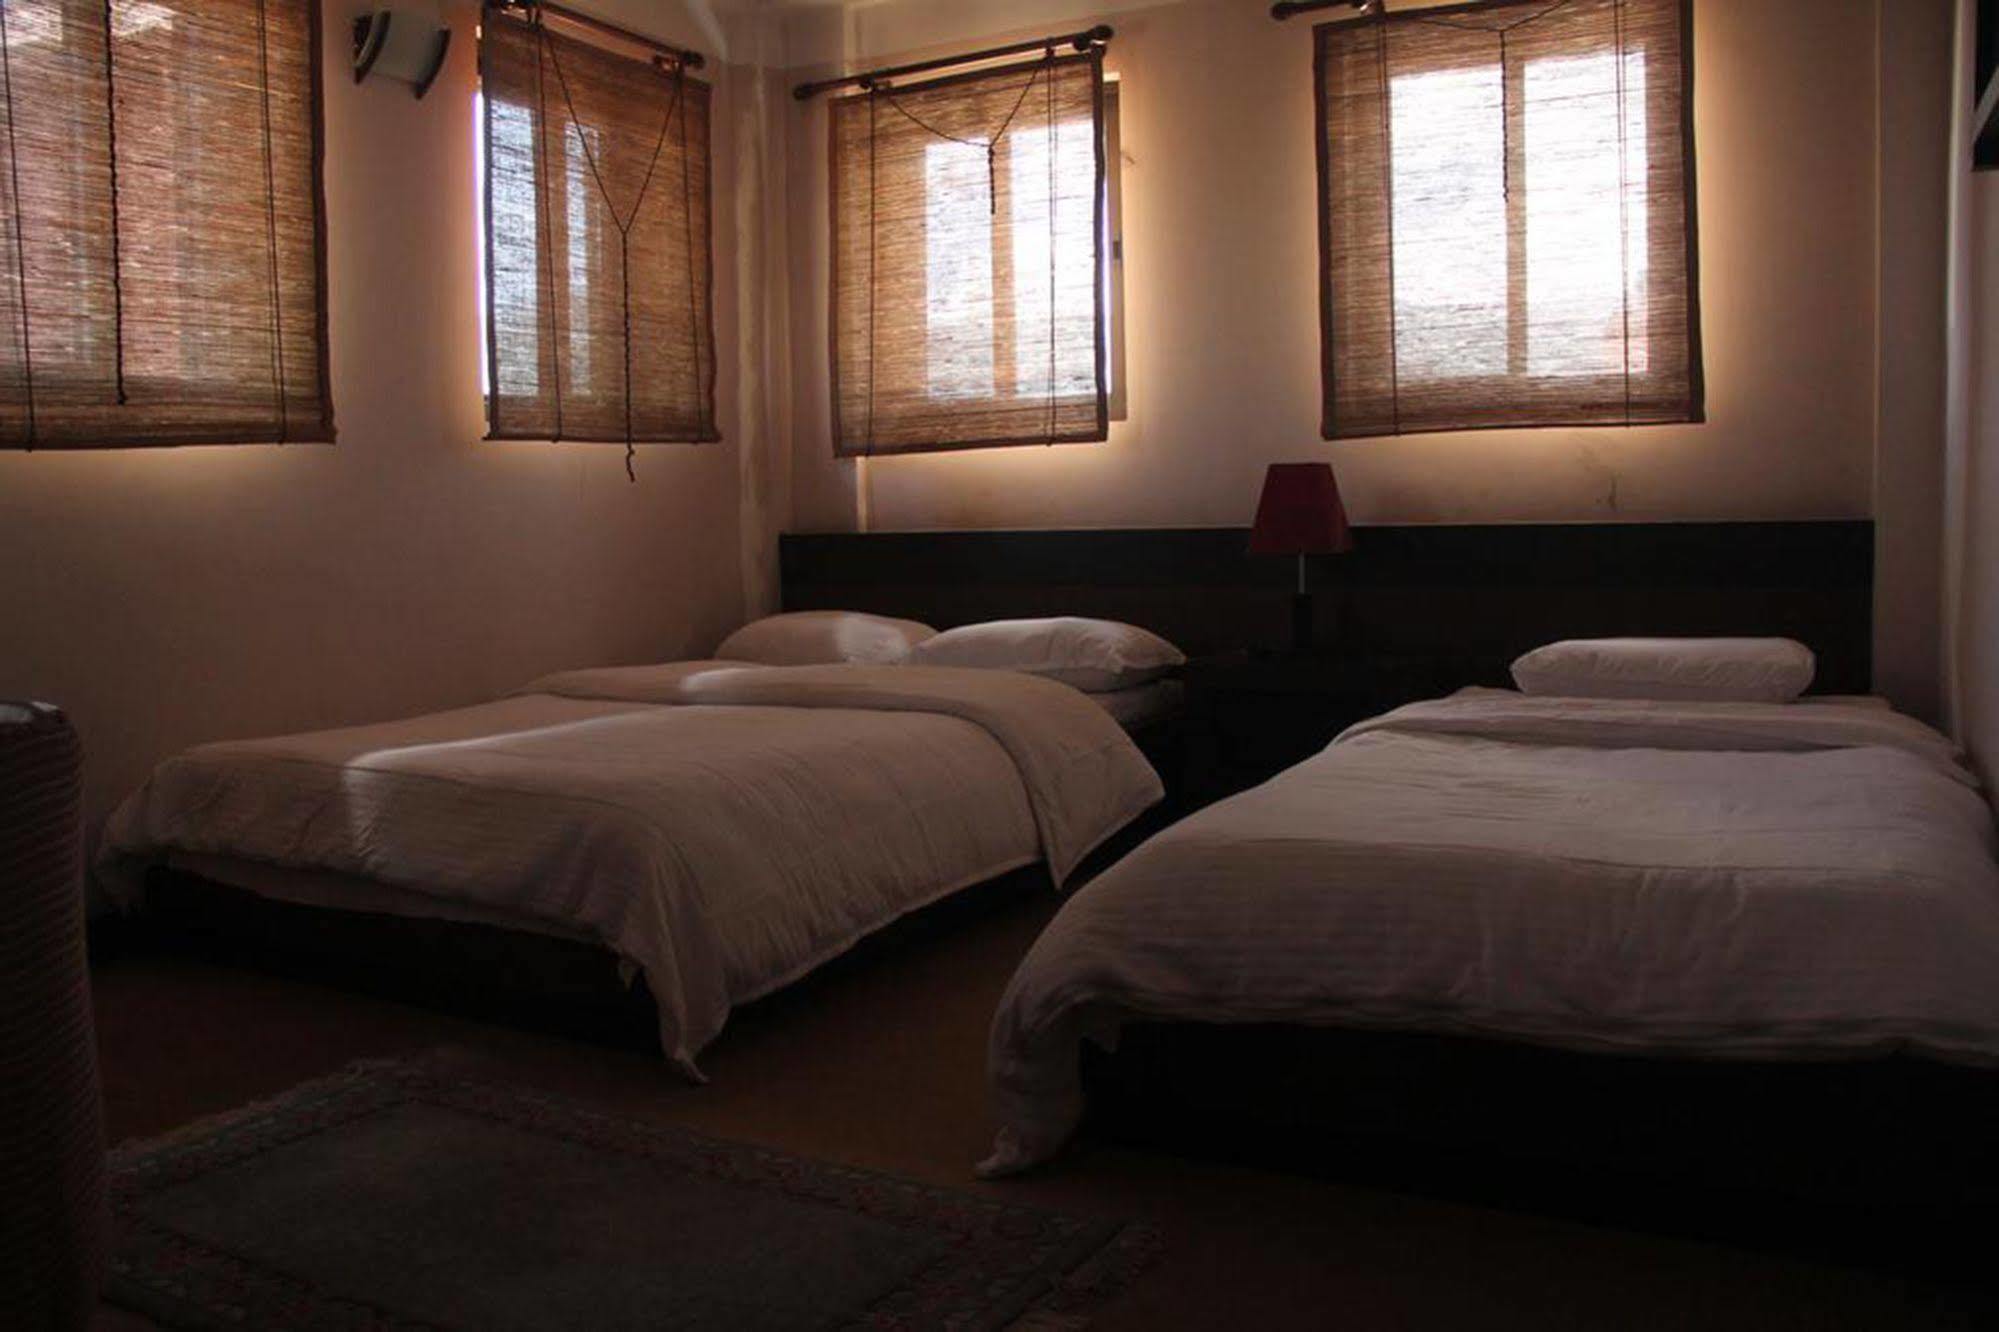 Bhadgaon Guest House Bhaktapur Ngoại thất bức ảnh